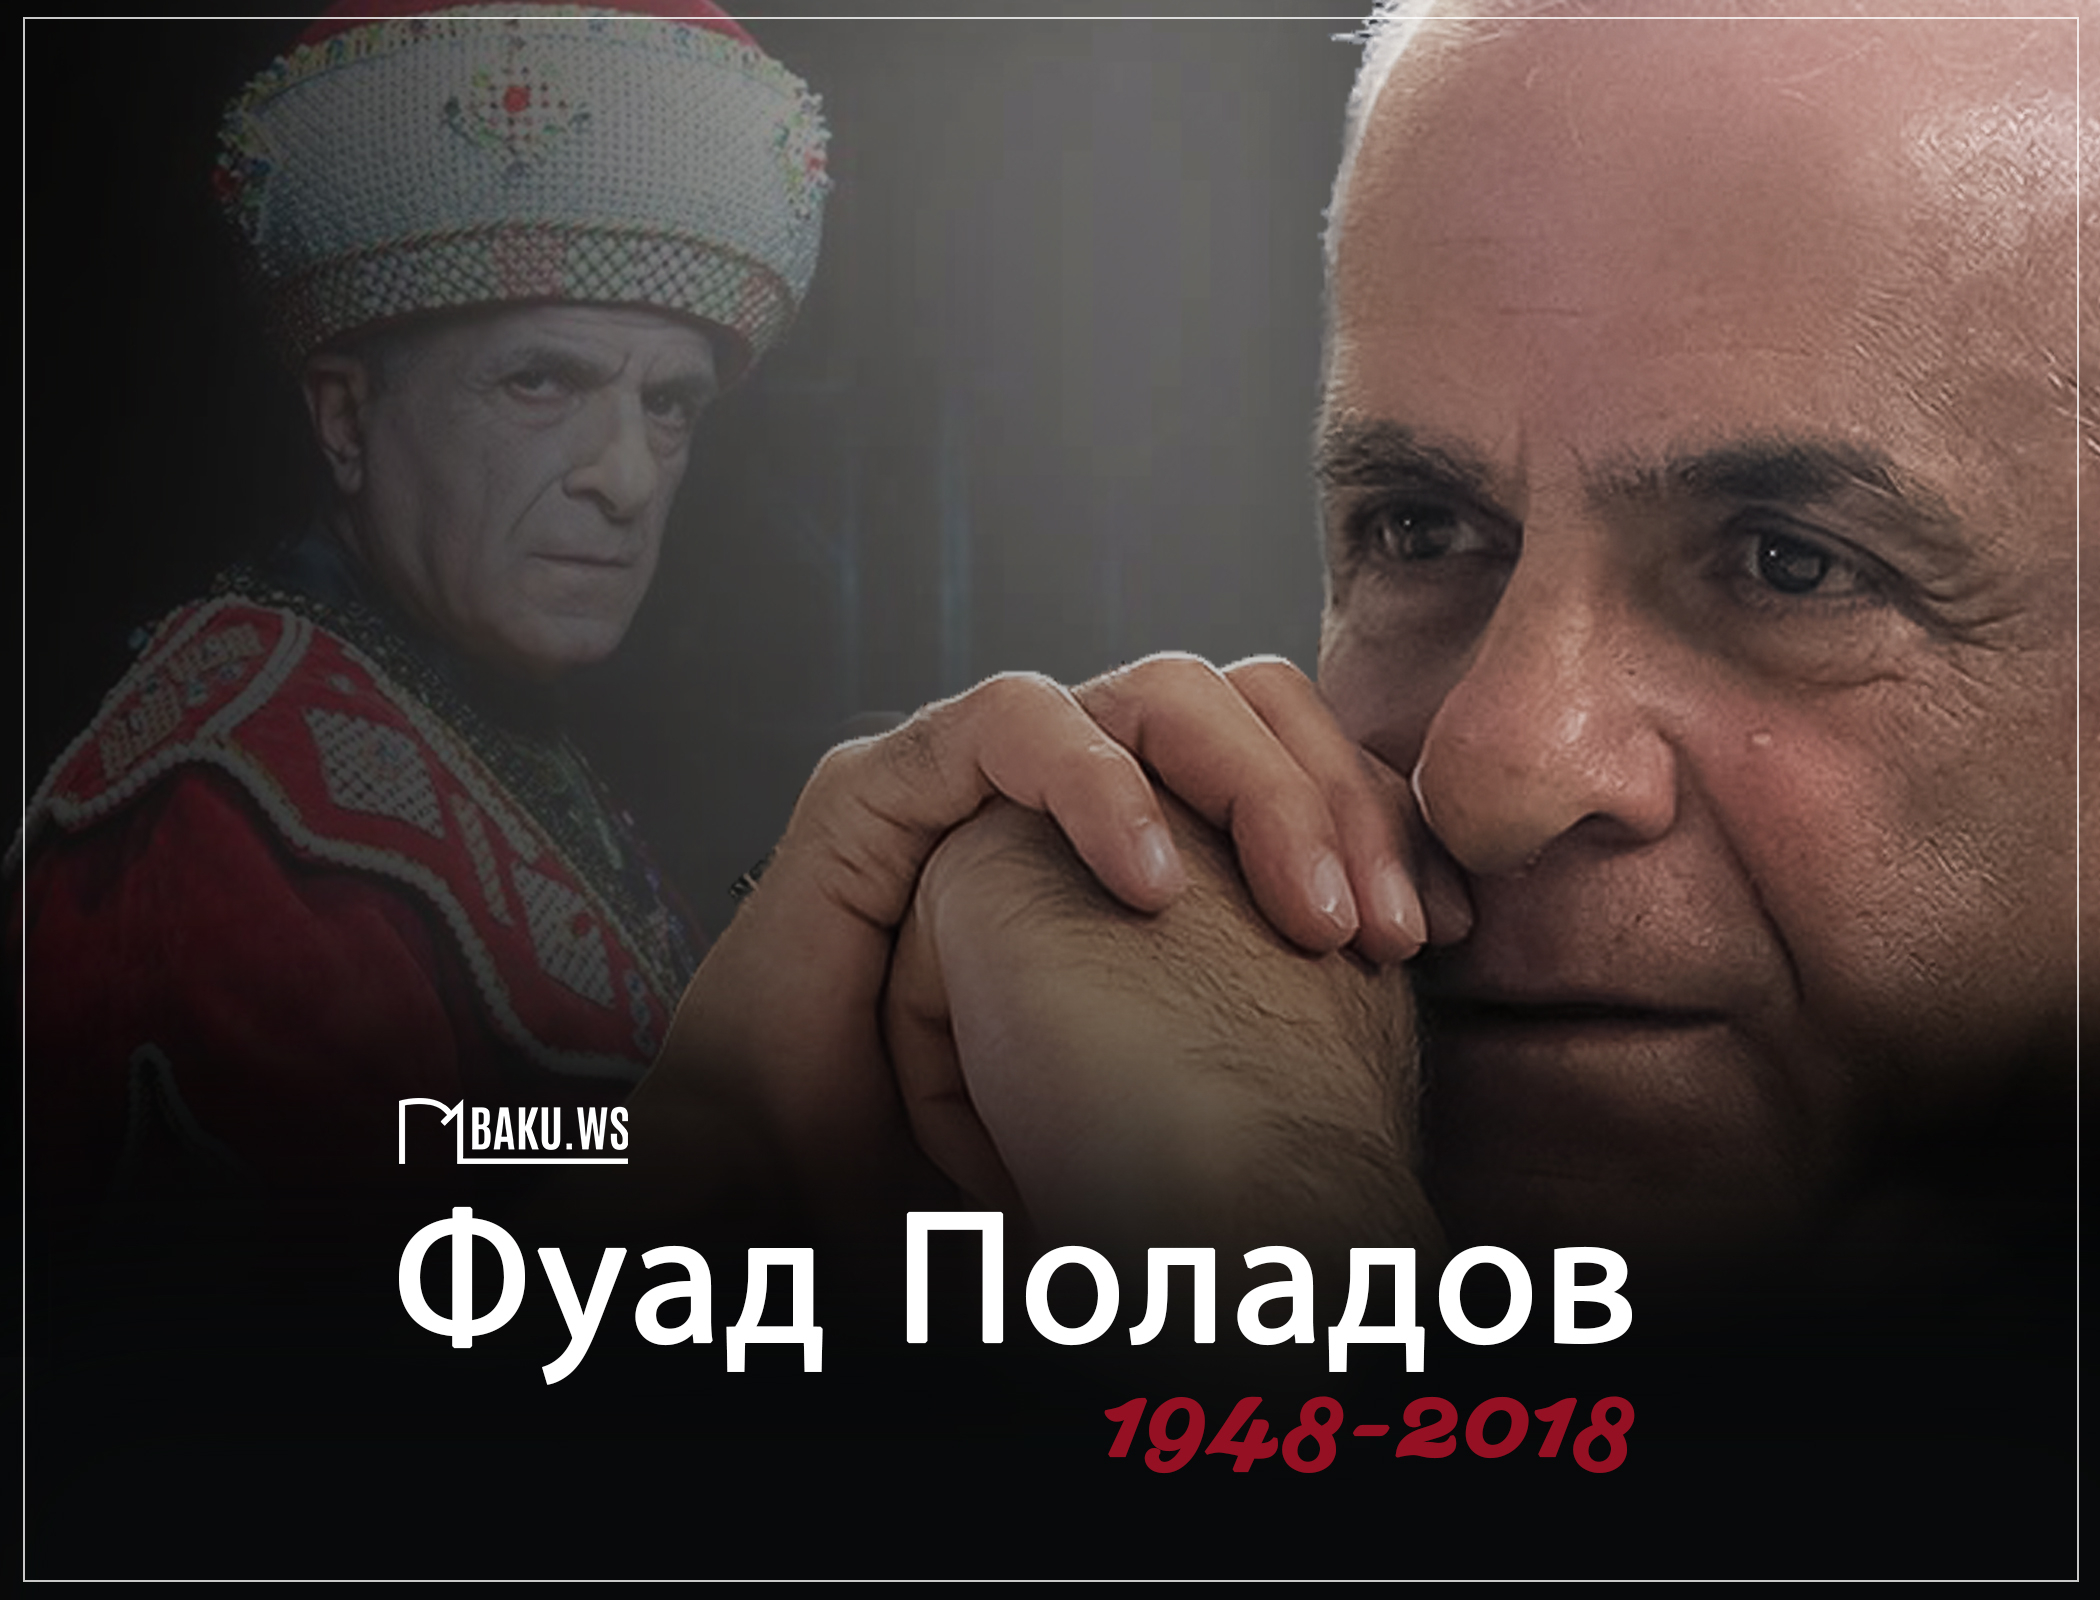 Фуаду Поладову сегодня исполнилось бы 74 года